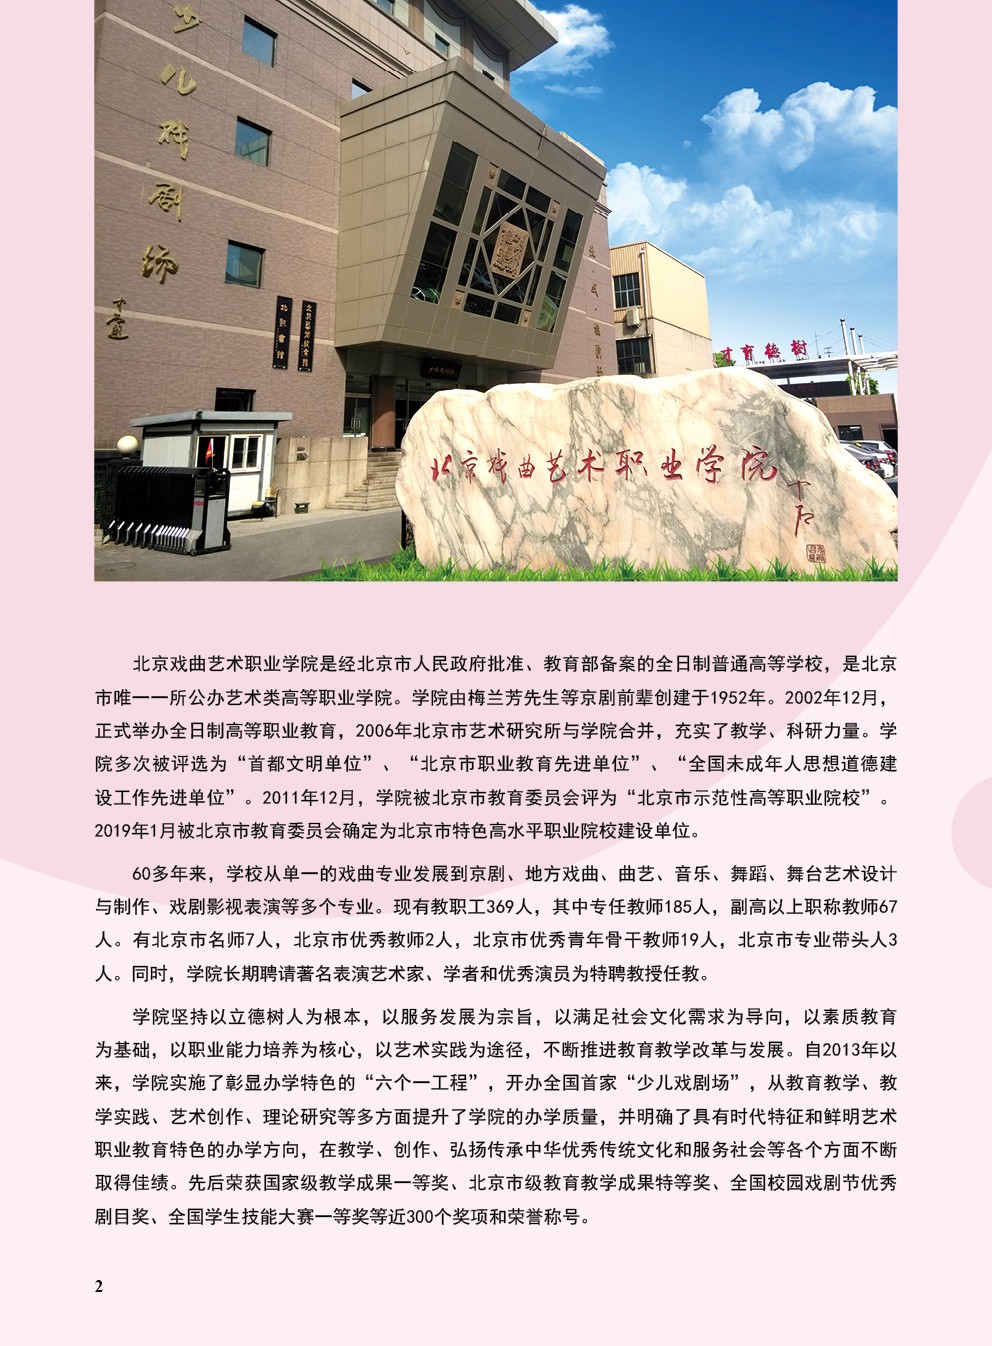 2021年北京戏曲艺术职业学院中专招生简章